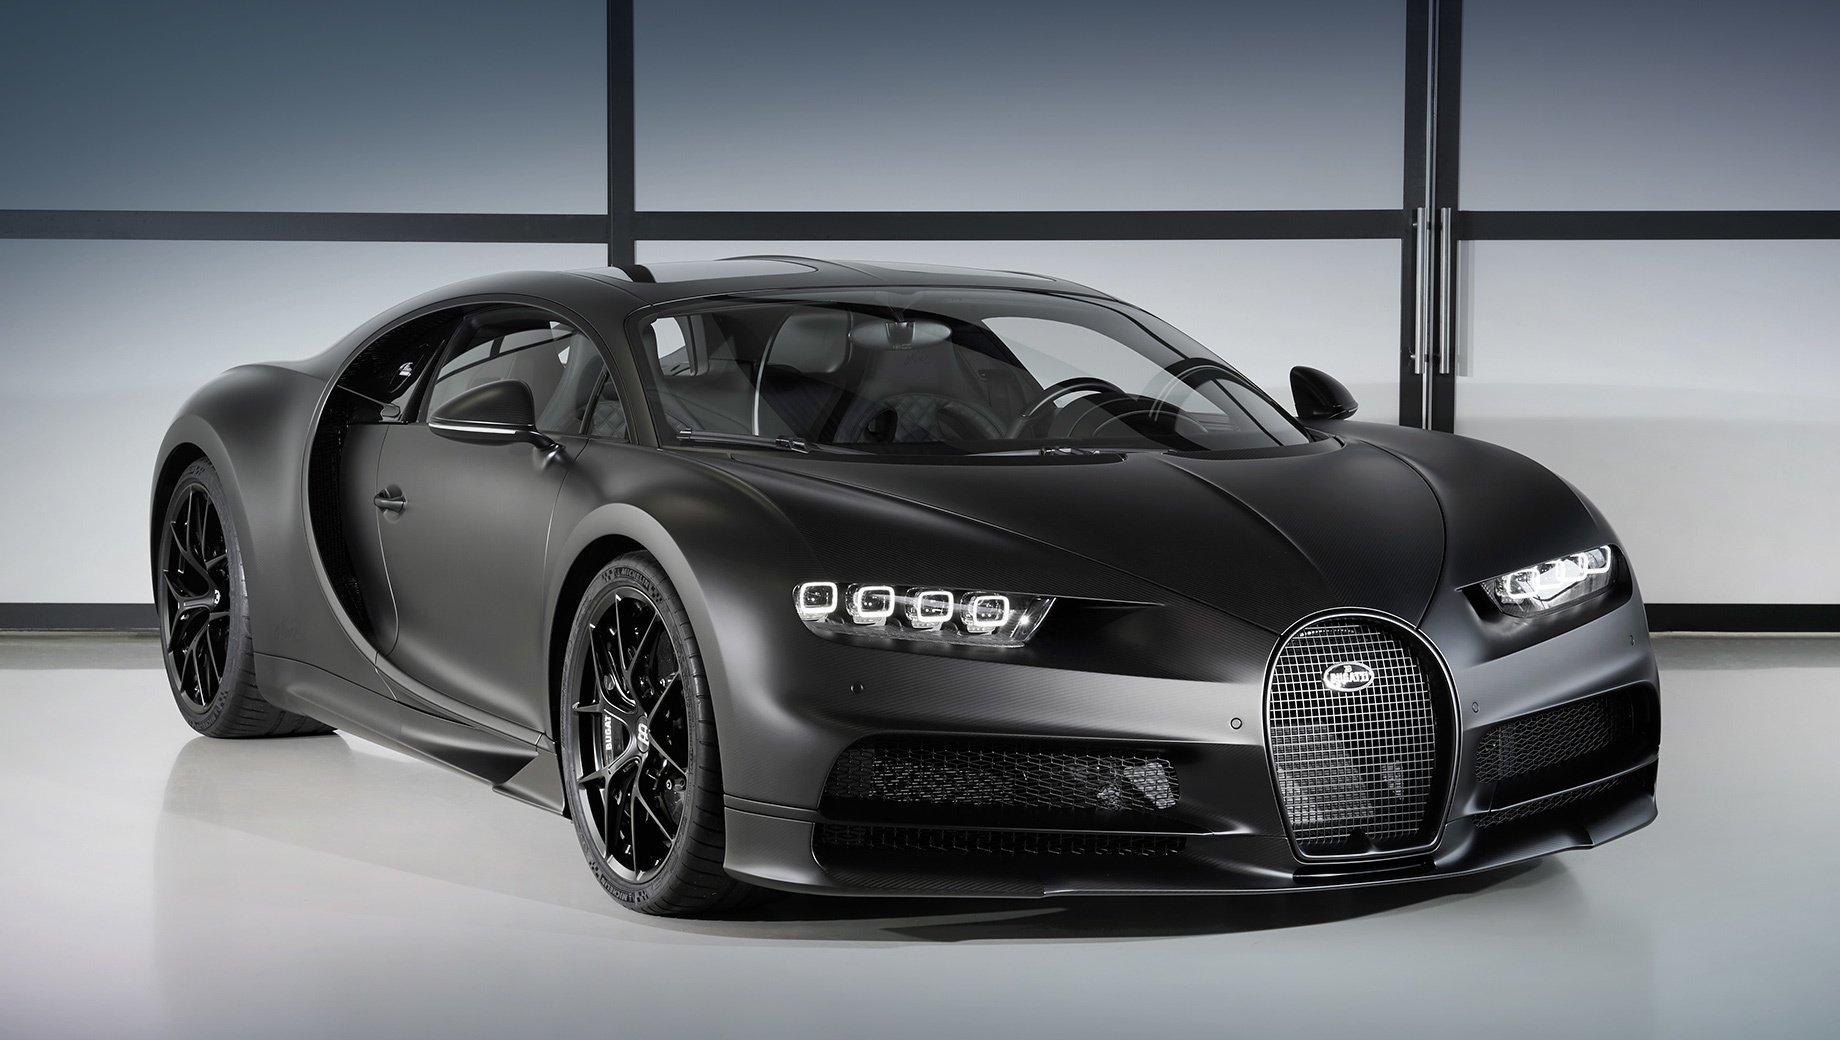 Bugatti chiron. Реальная цена юбилейного купе неизвестна. Загадкой остаётся и имя владельца, который получит свой автомобиль только после закрытия Женевского автосалона 15 марта. Ещё 19 гиперкаров специального издания доставят покупателям во втором квартале 2020 года.